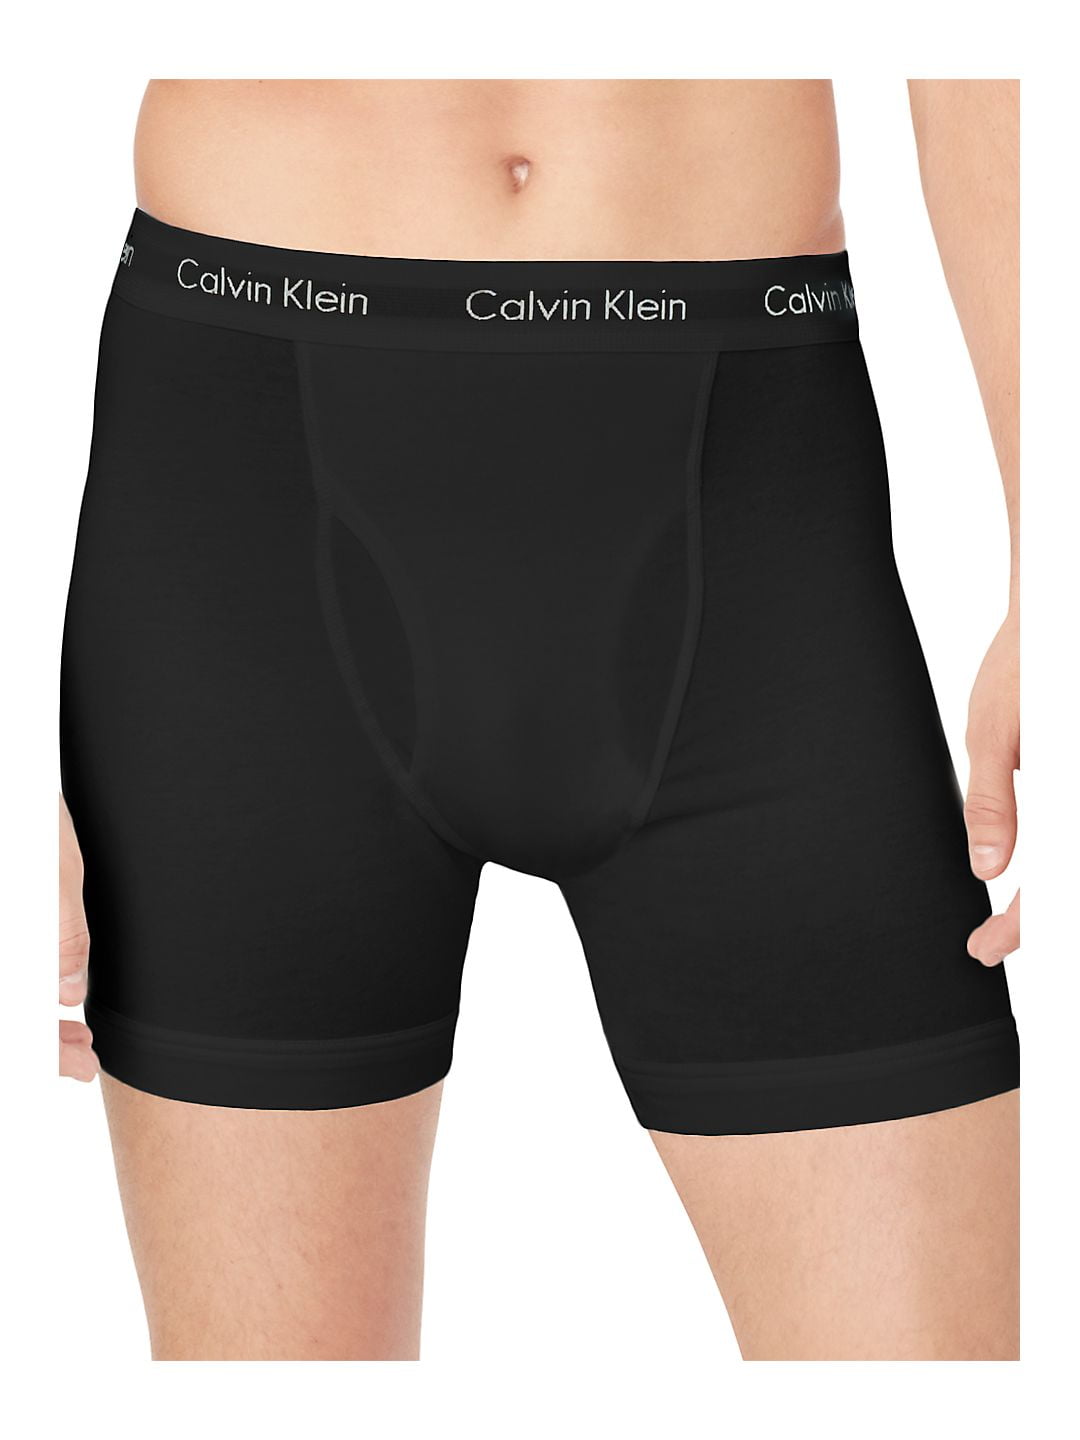 Messing persoonlijkheid Tijdreeksen Calvin Klein Men's Cotton Stretch Boxer Brief (3-Pack) - Walmart.com